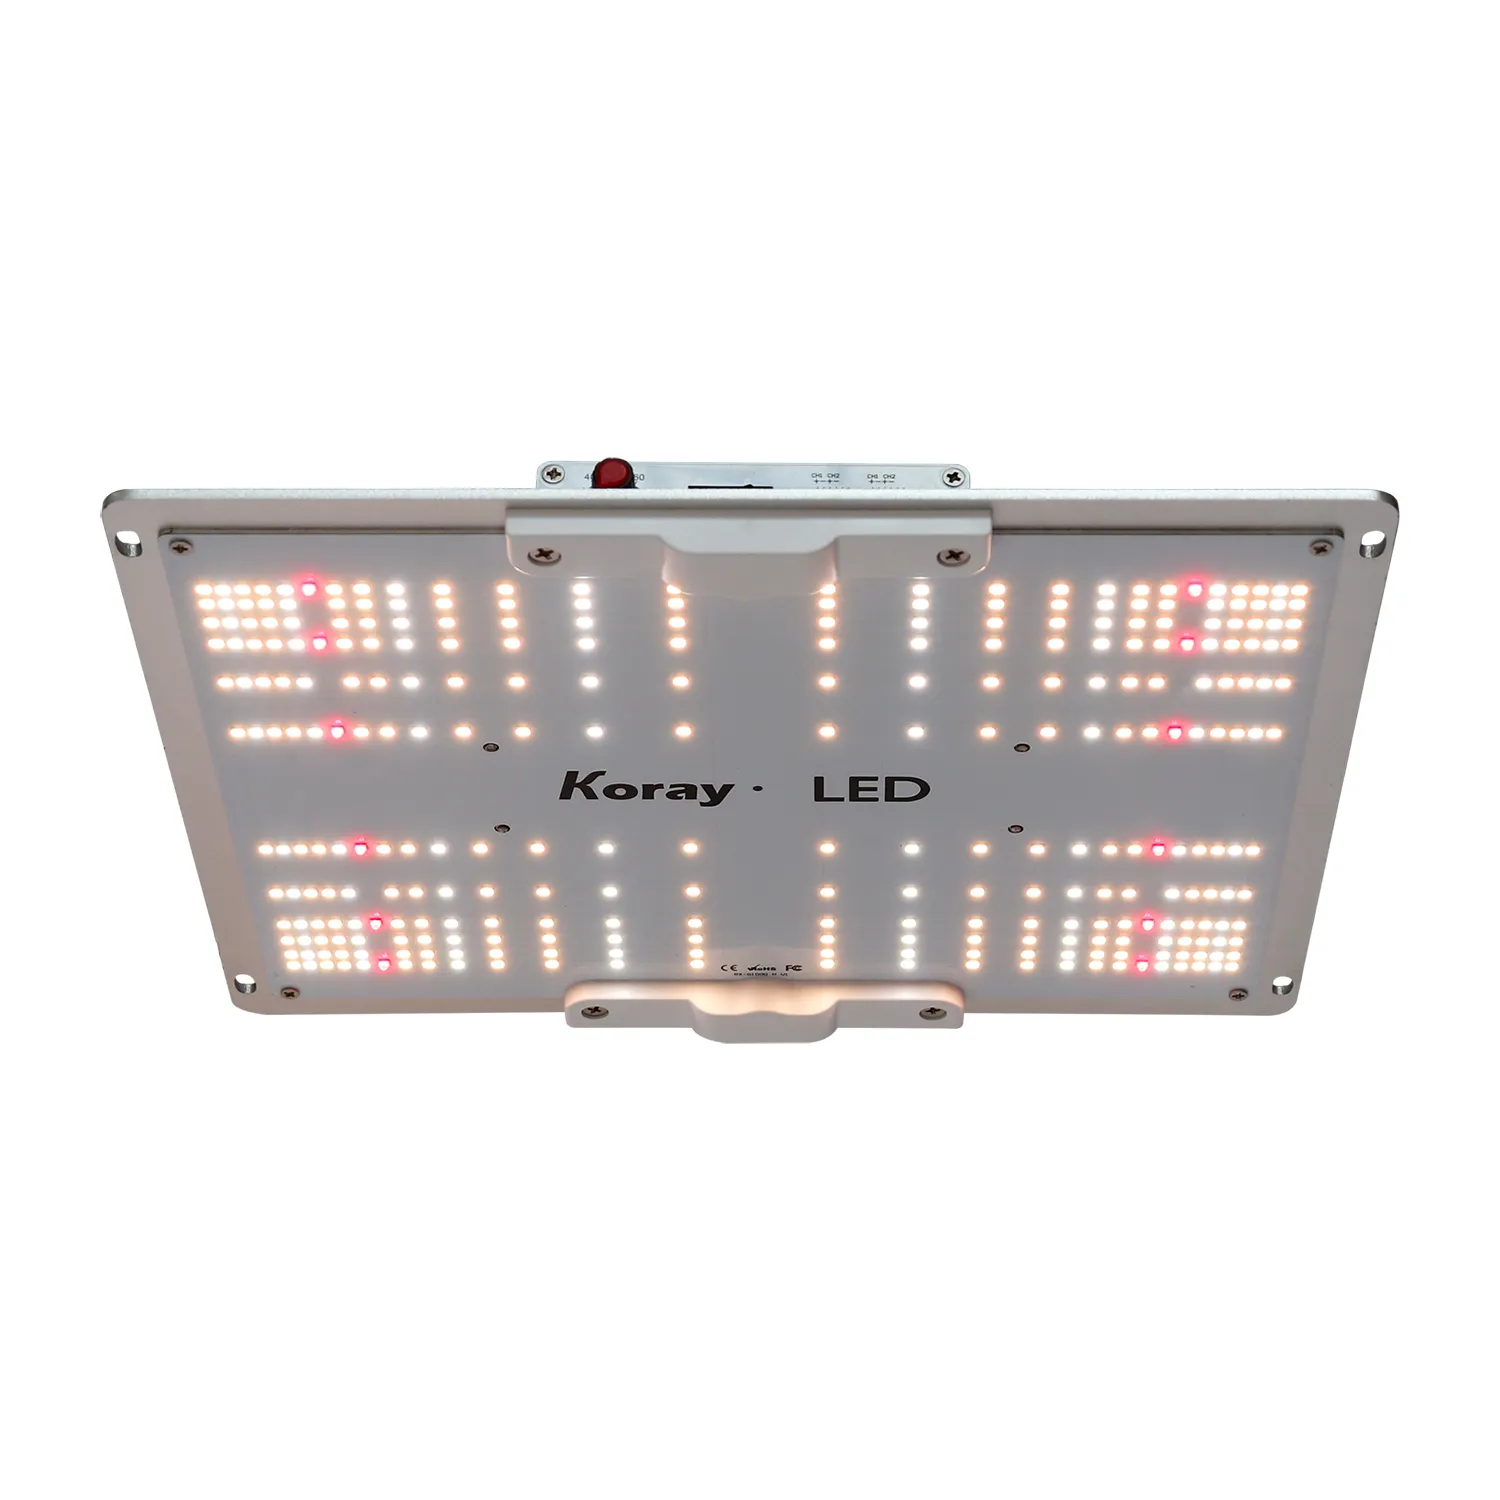 LED growlights led sebze işık lambası sf1000 sf-1000 sf 1000 sf4000 sf2000 için hidroponik kapalı tarım kurulu